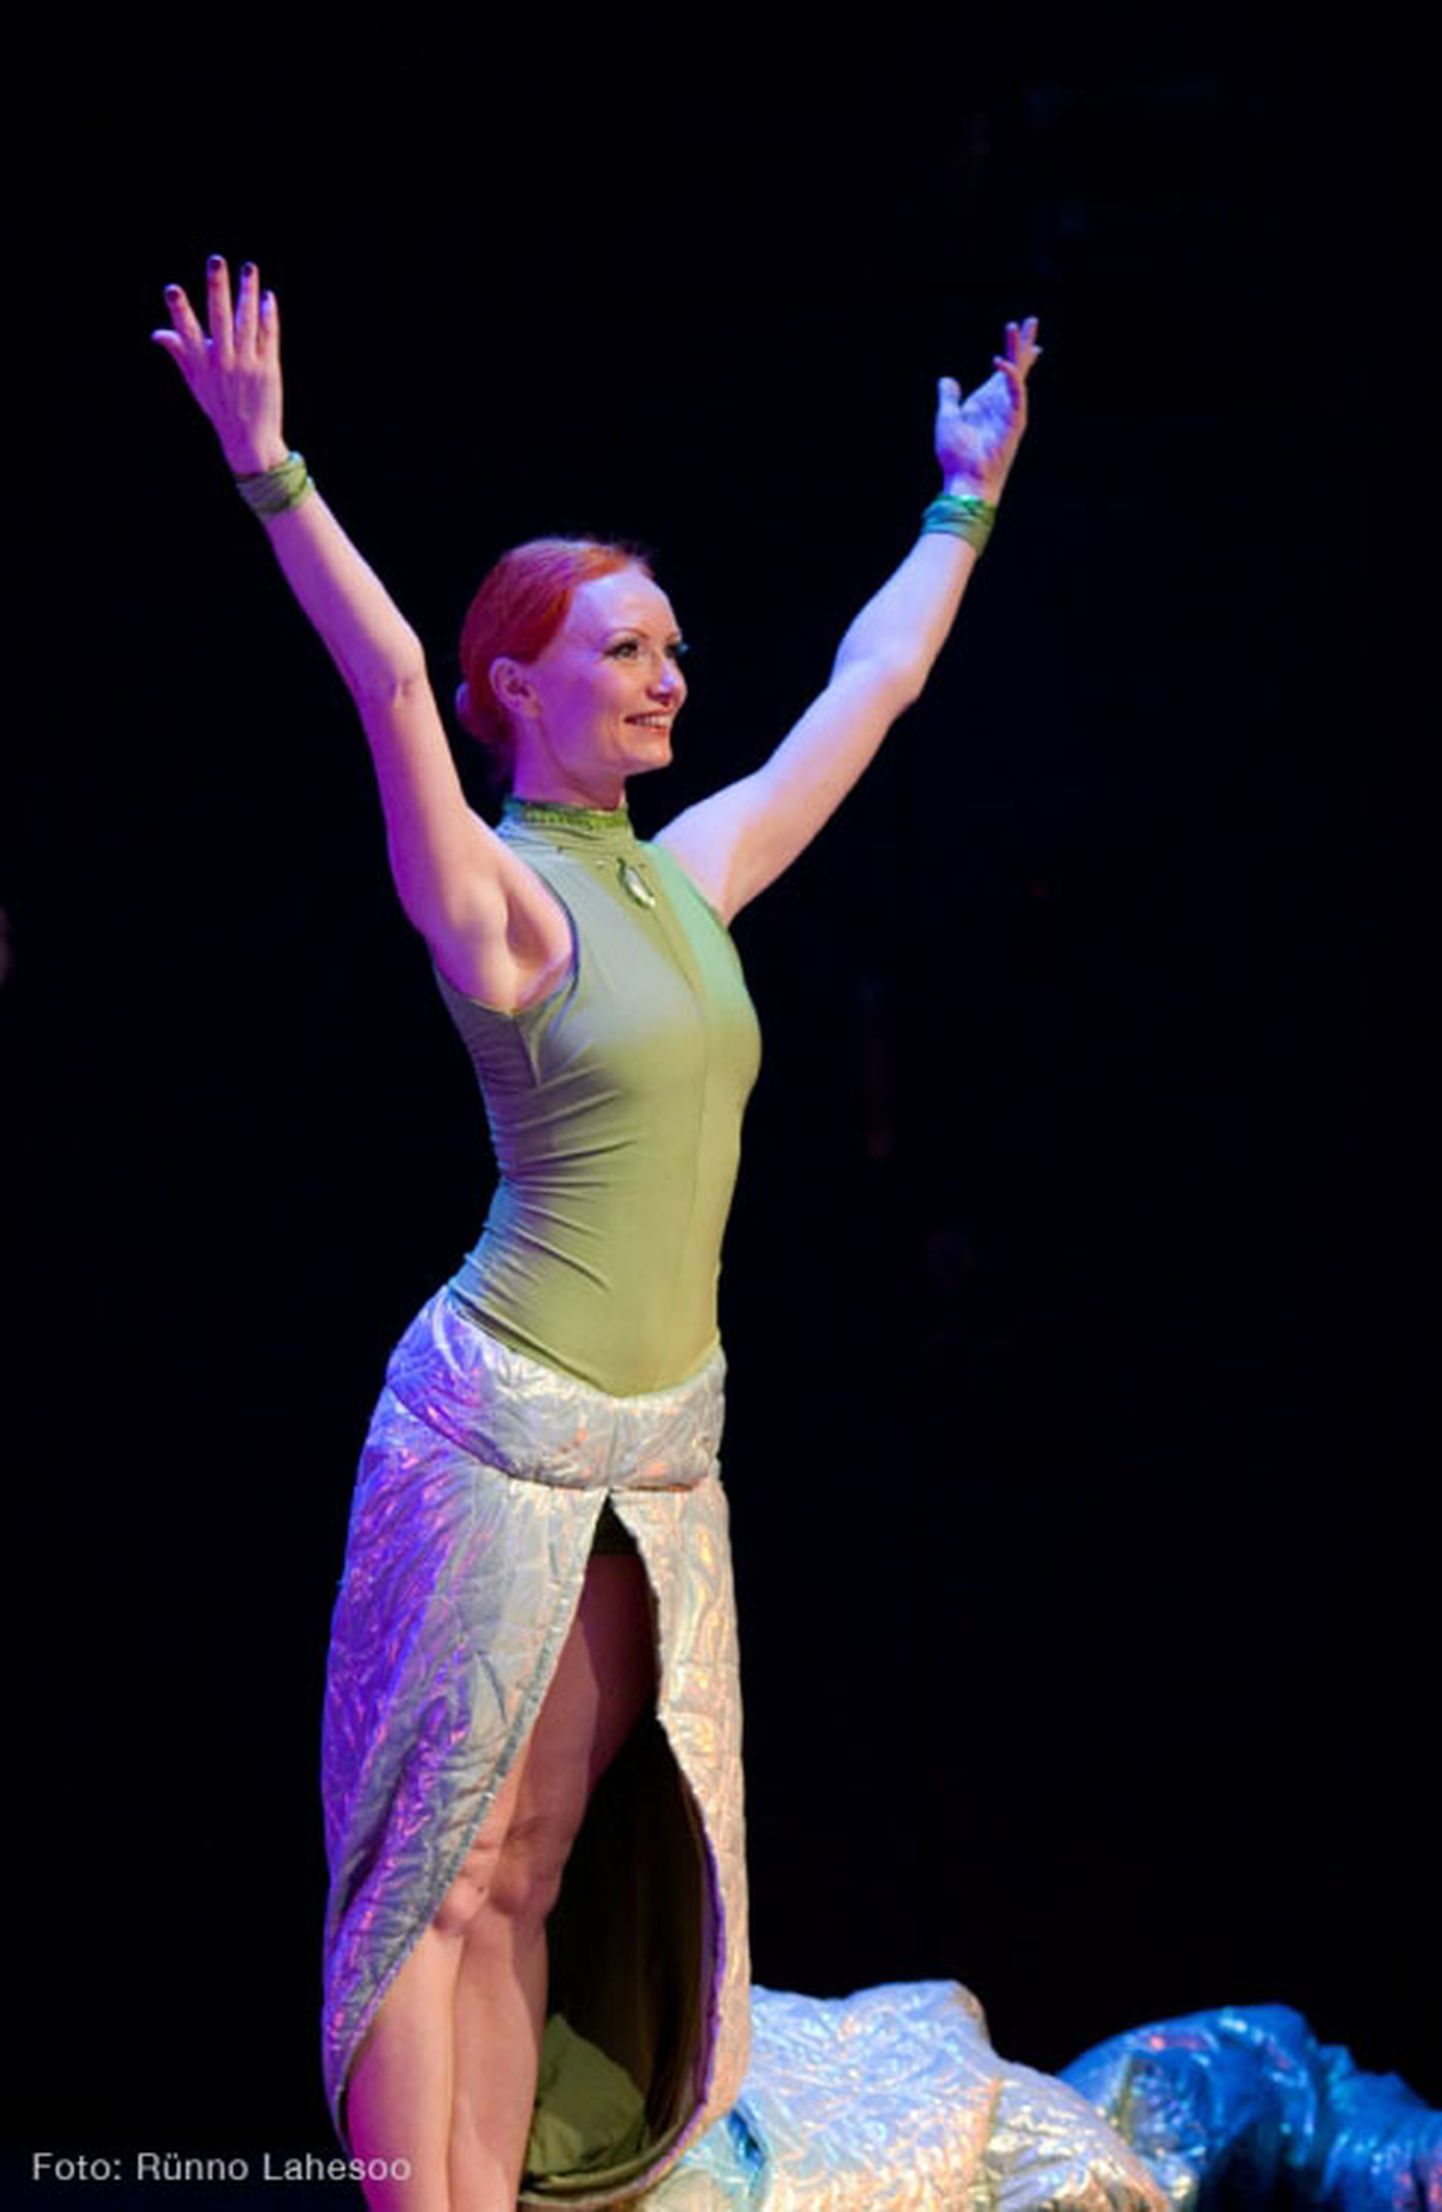 Основанный в 2012 году танцевальный театр "Goltsman Ballet" представил на суд йыхвиской публики в том числе танцевальный спектакль "Софи и Волшебная птица", хореографом-постановщиком которого является Мария Гольцман. Сейчас есть уникальная возможность принять участие в проводимых танцовщицей веб-уроках.